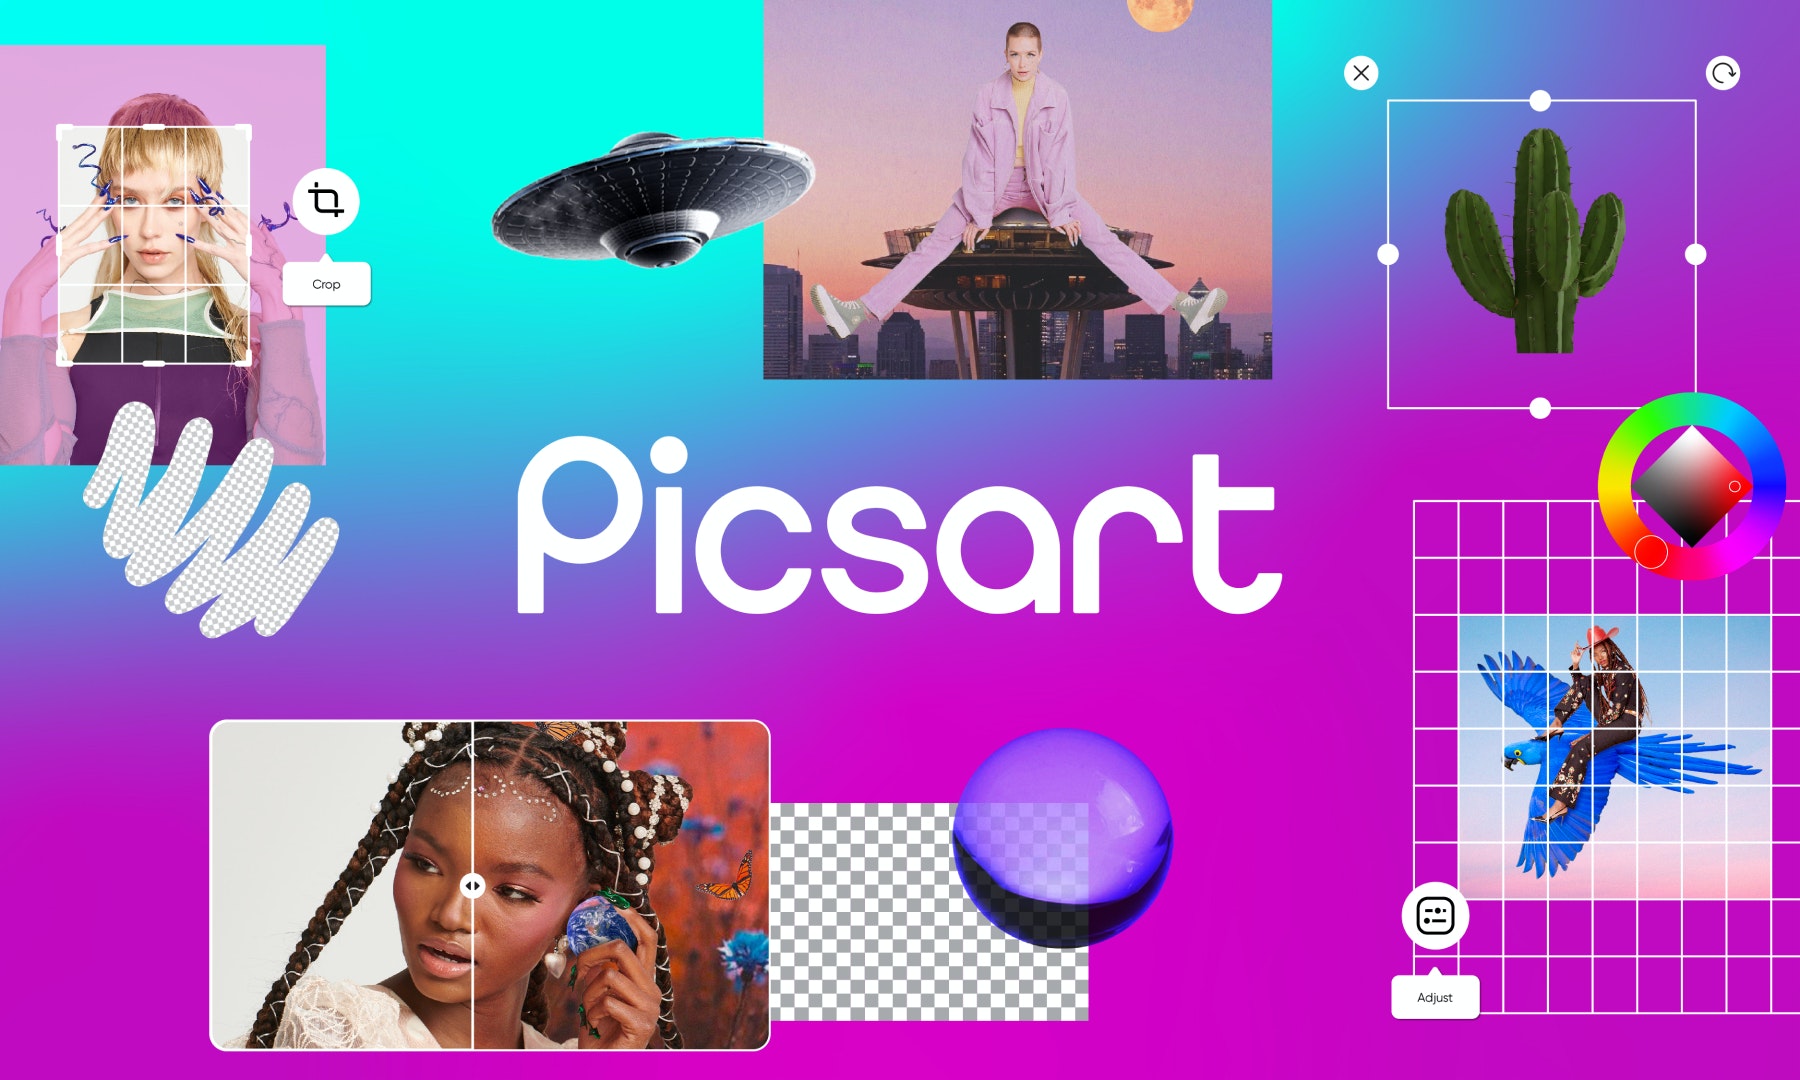 Picsart - Herramientas de IA para que los creadores diseñen, editen, dibujen y compartan contenido de fotos y videos